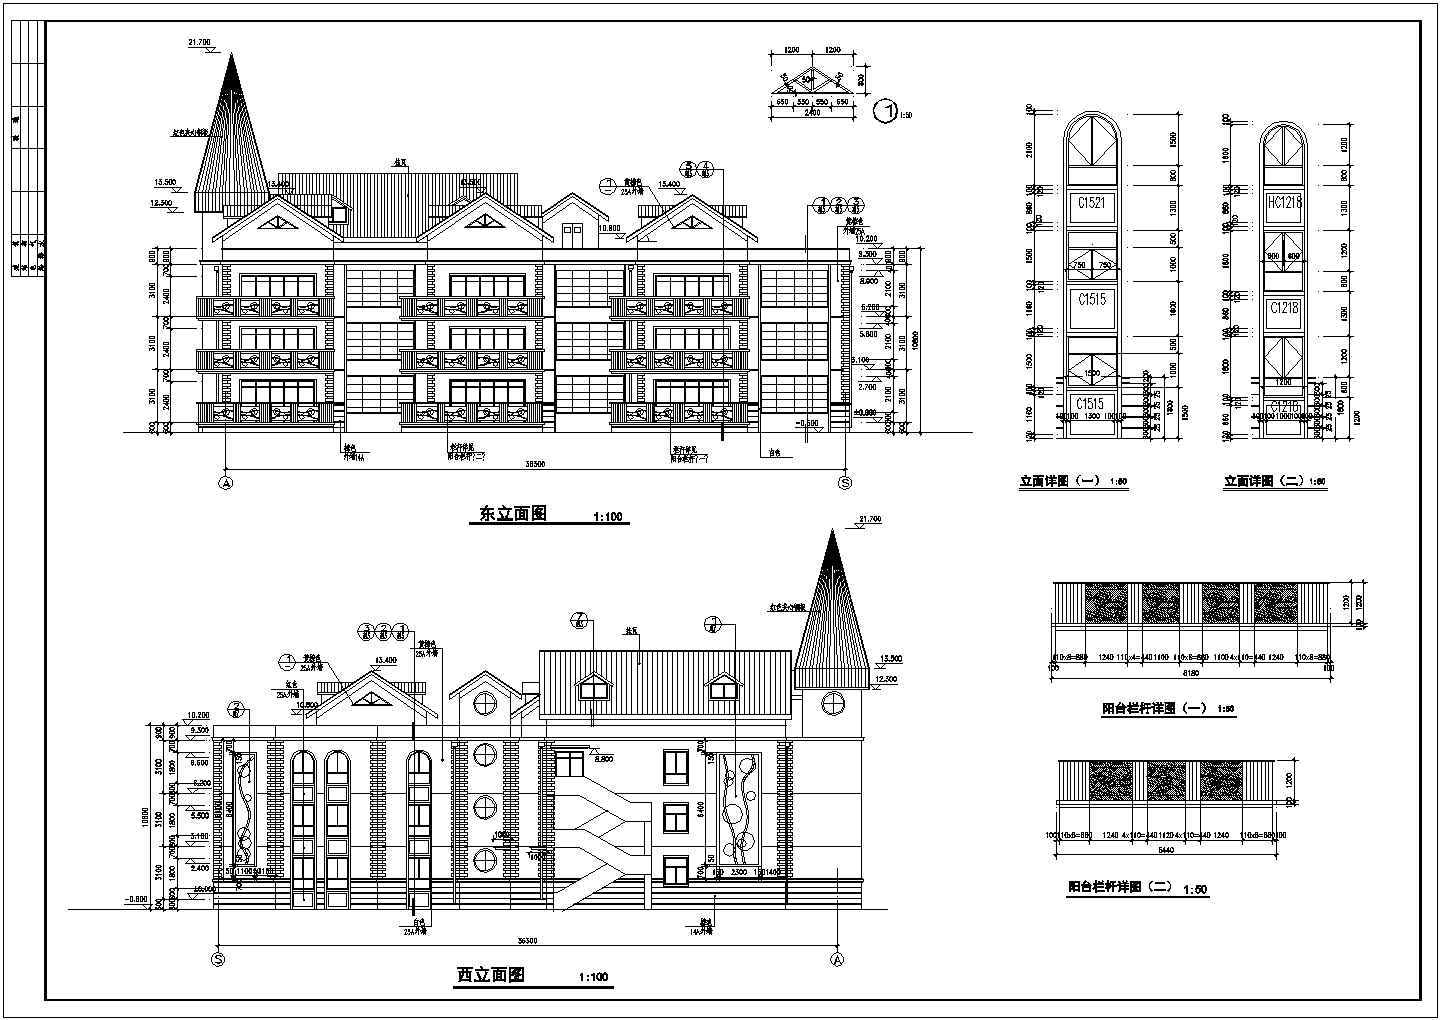 北京某小区三层砖混结构幼儿园建筑设计施工图